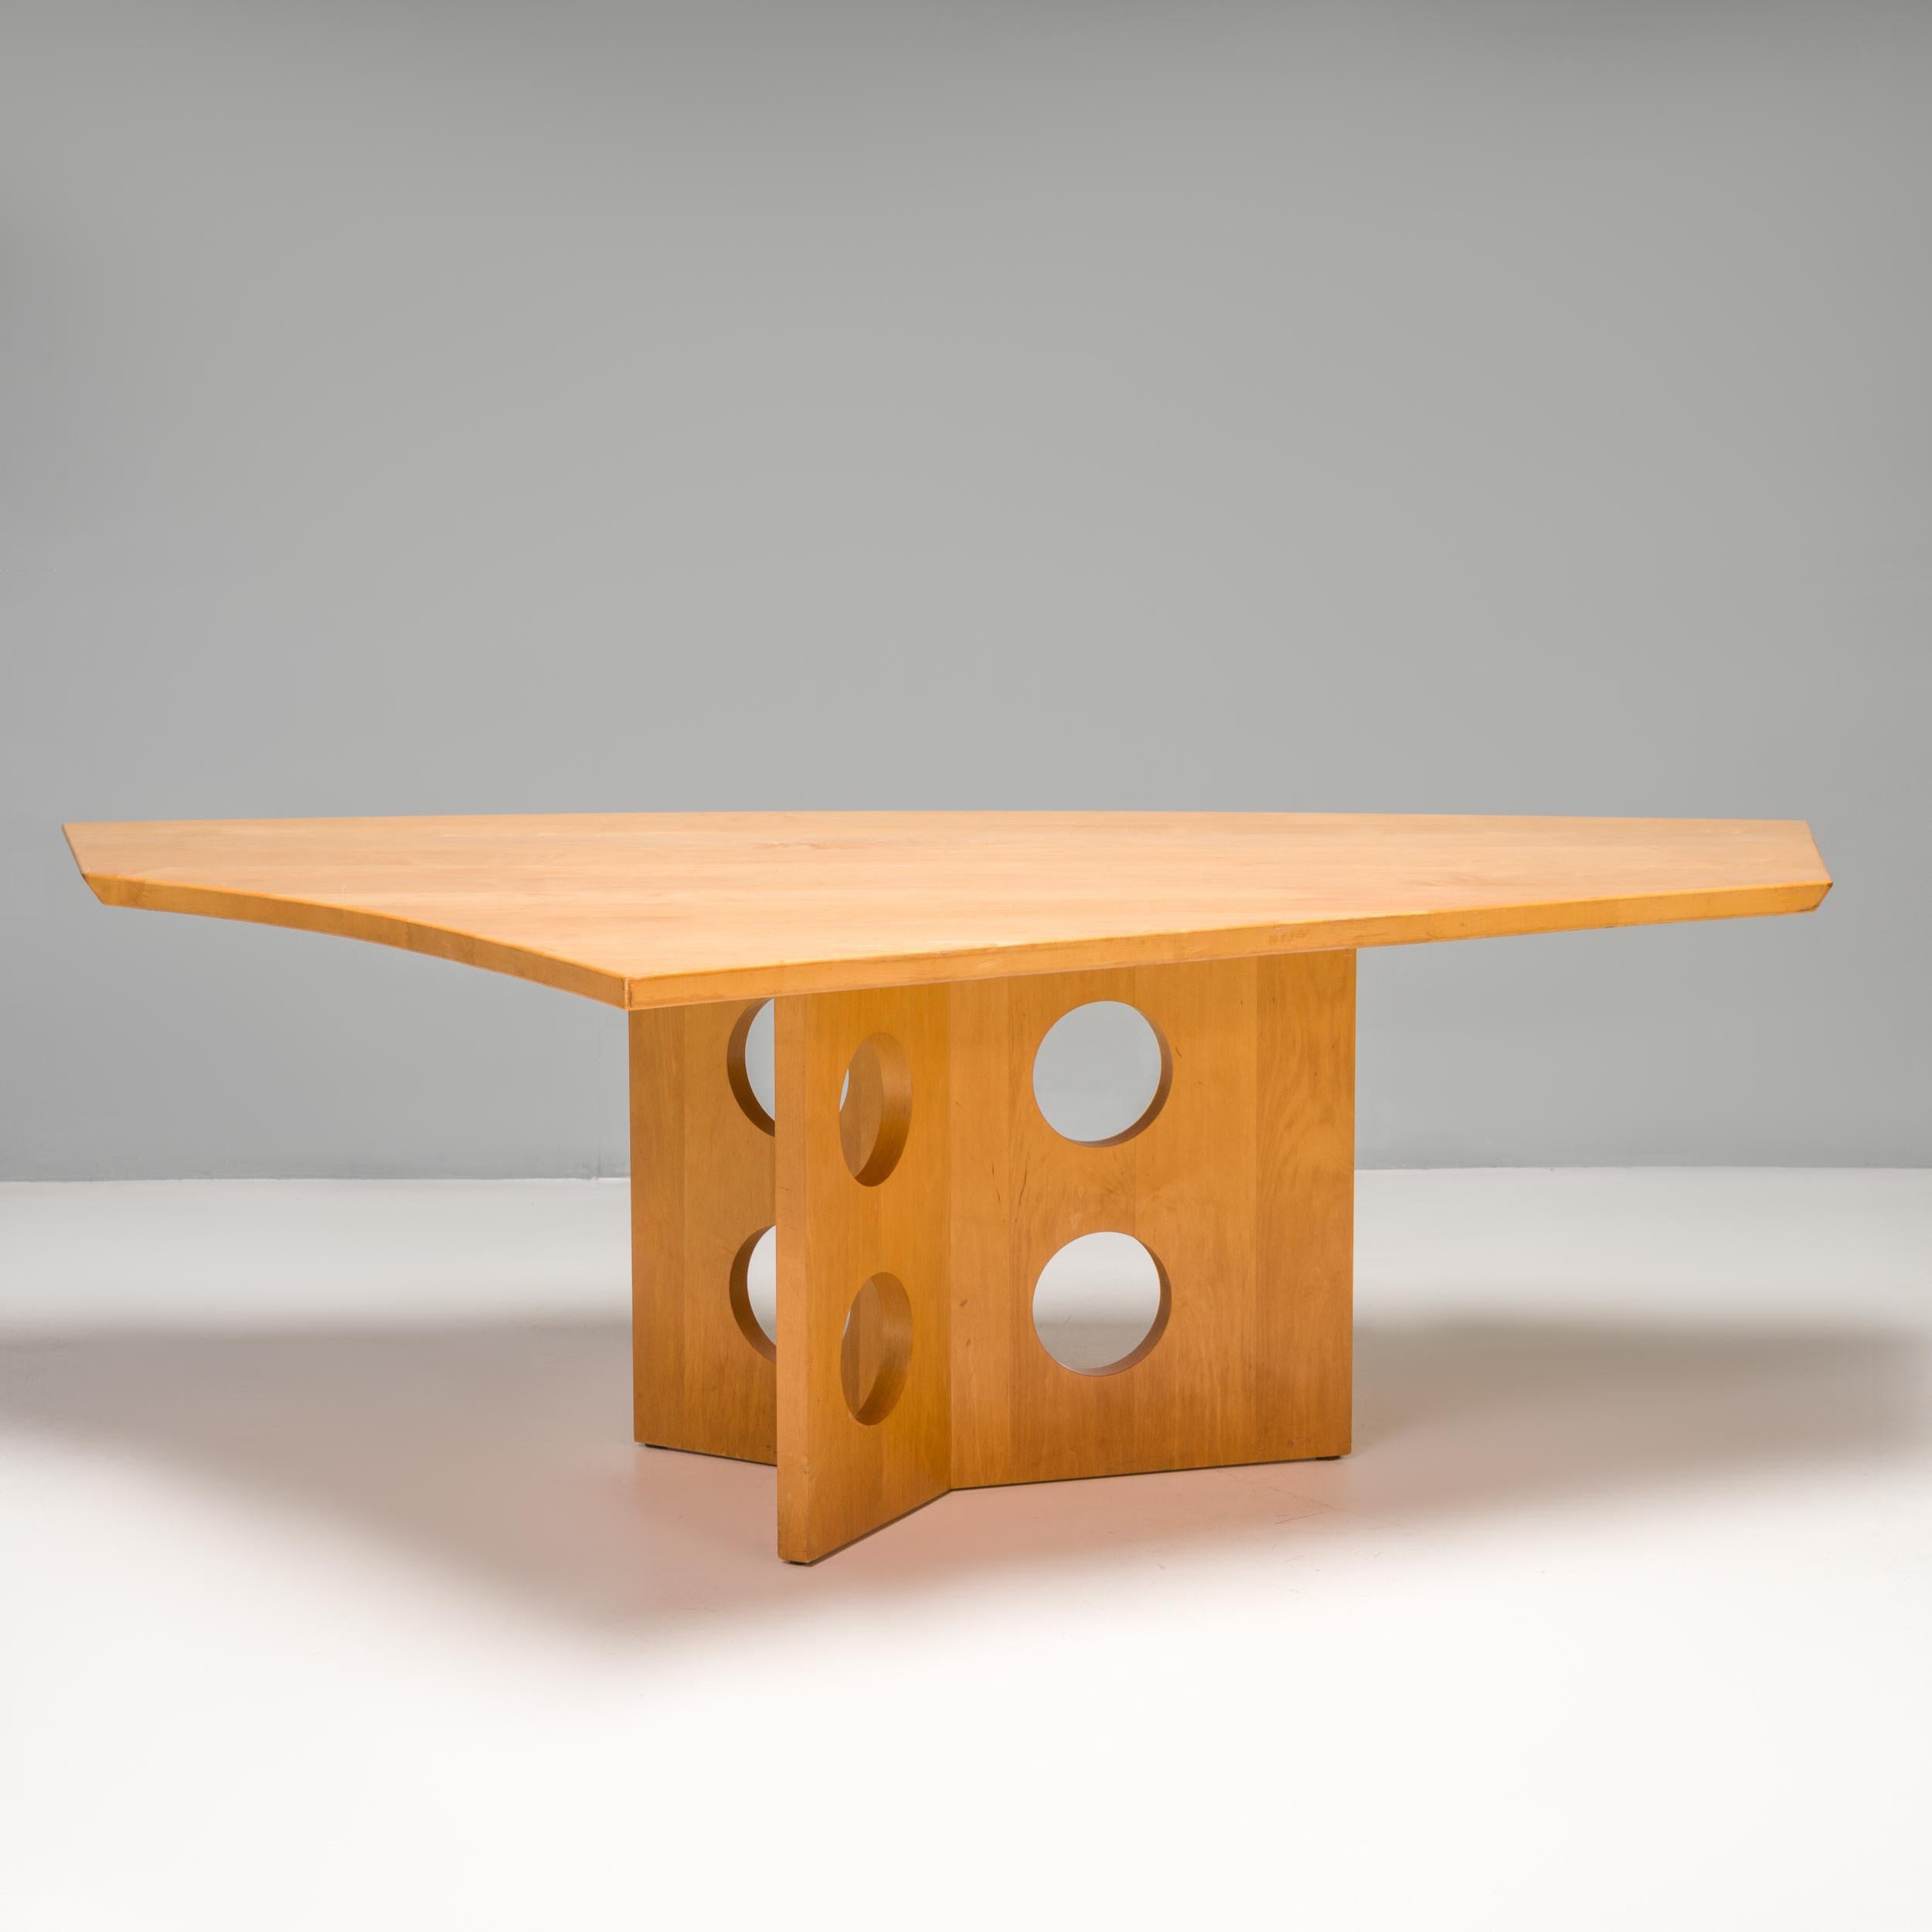 Der Esstisch M23 ist eine Collaboration und ähnelt stilistisch dem Tisch M21, der von Jean Prouvé inspiriert wurde und von Tecta hergestellt wird.

Der aus Massivholz gefertigte Tisch hat einen kantigen Sockel, der aus drei Holzplatten mit je zwei